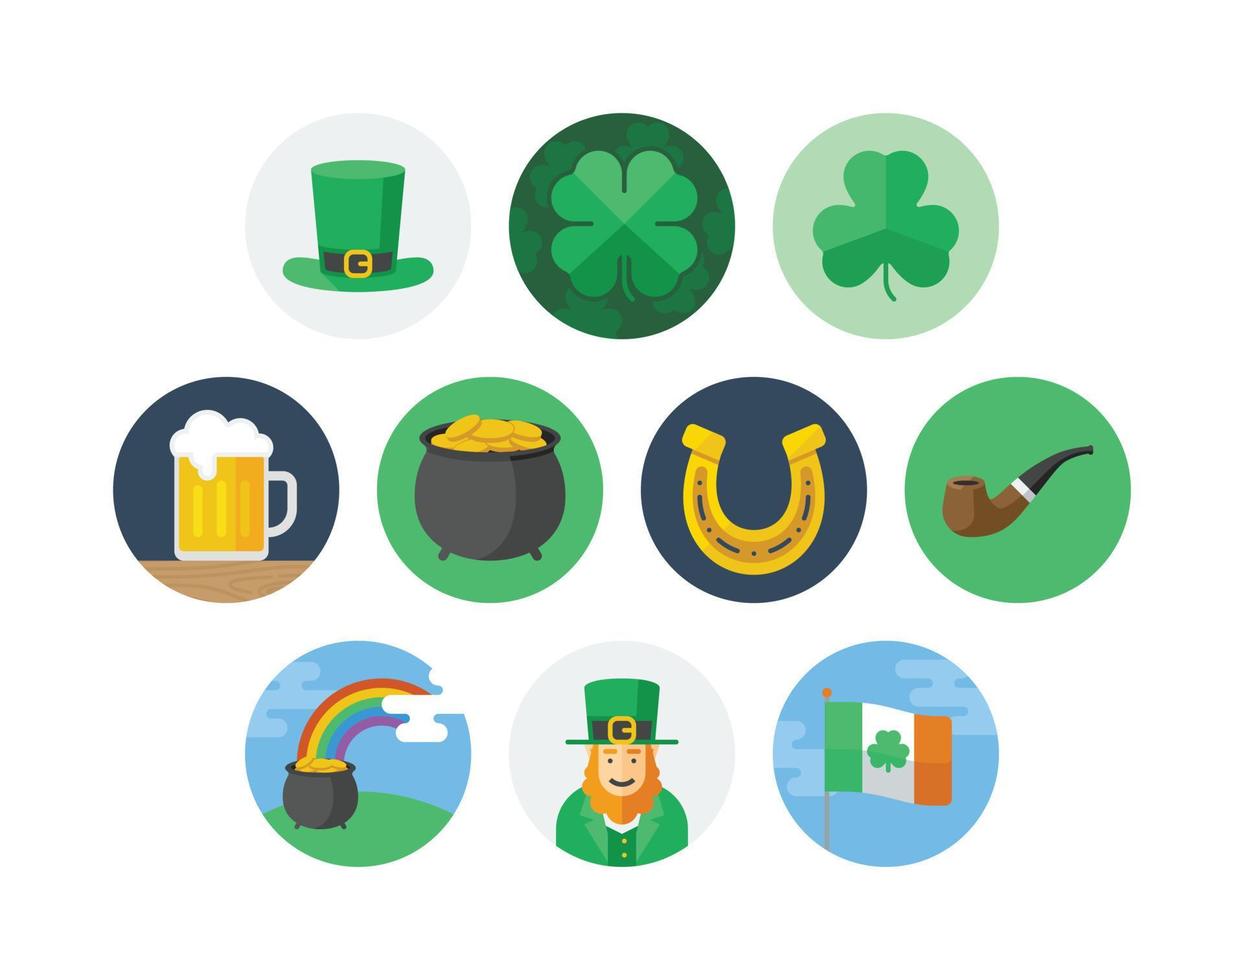 S t. conjunto de iconos de insignia de círculo plano del día de patrick con iconos relacionados con la suerte y la cerveza vector